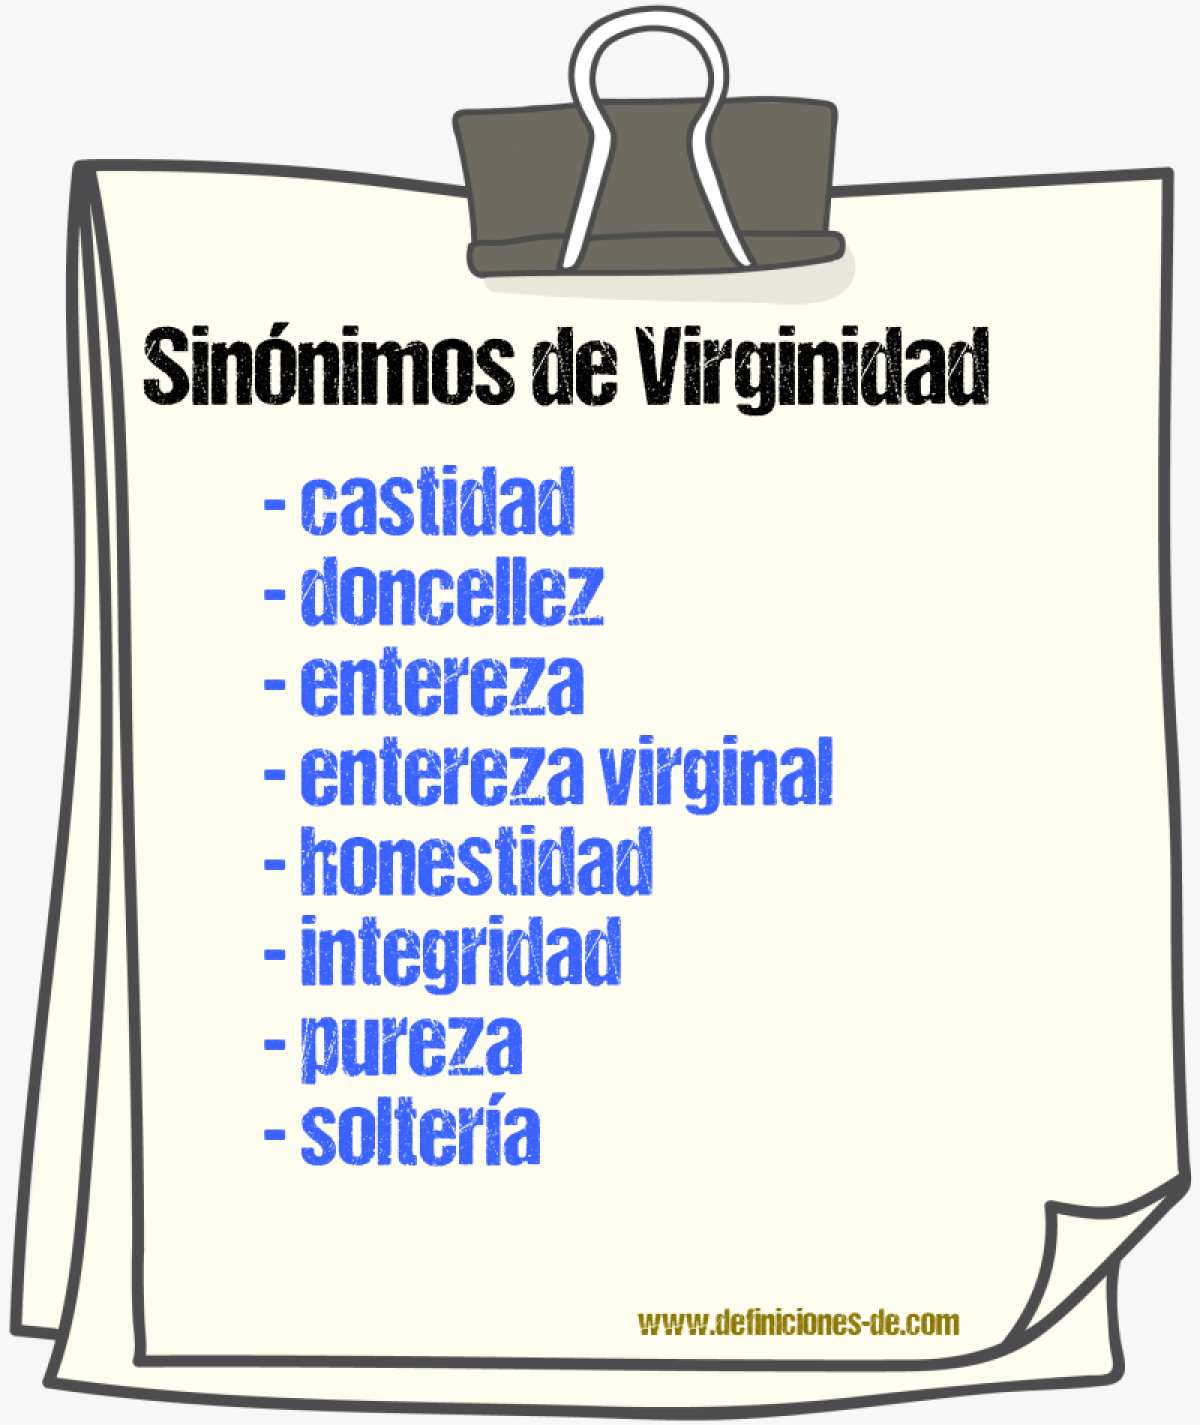 Sinónimos de virginidad